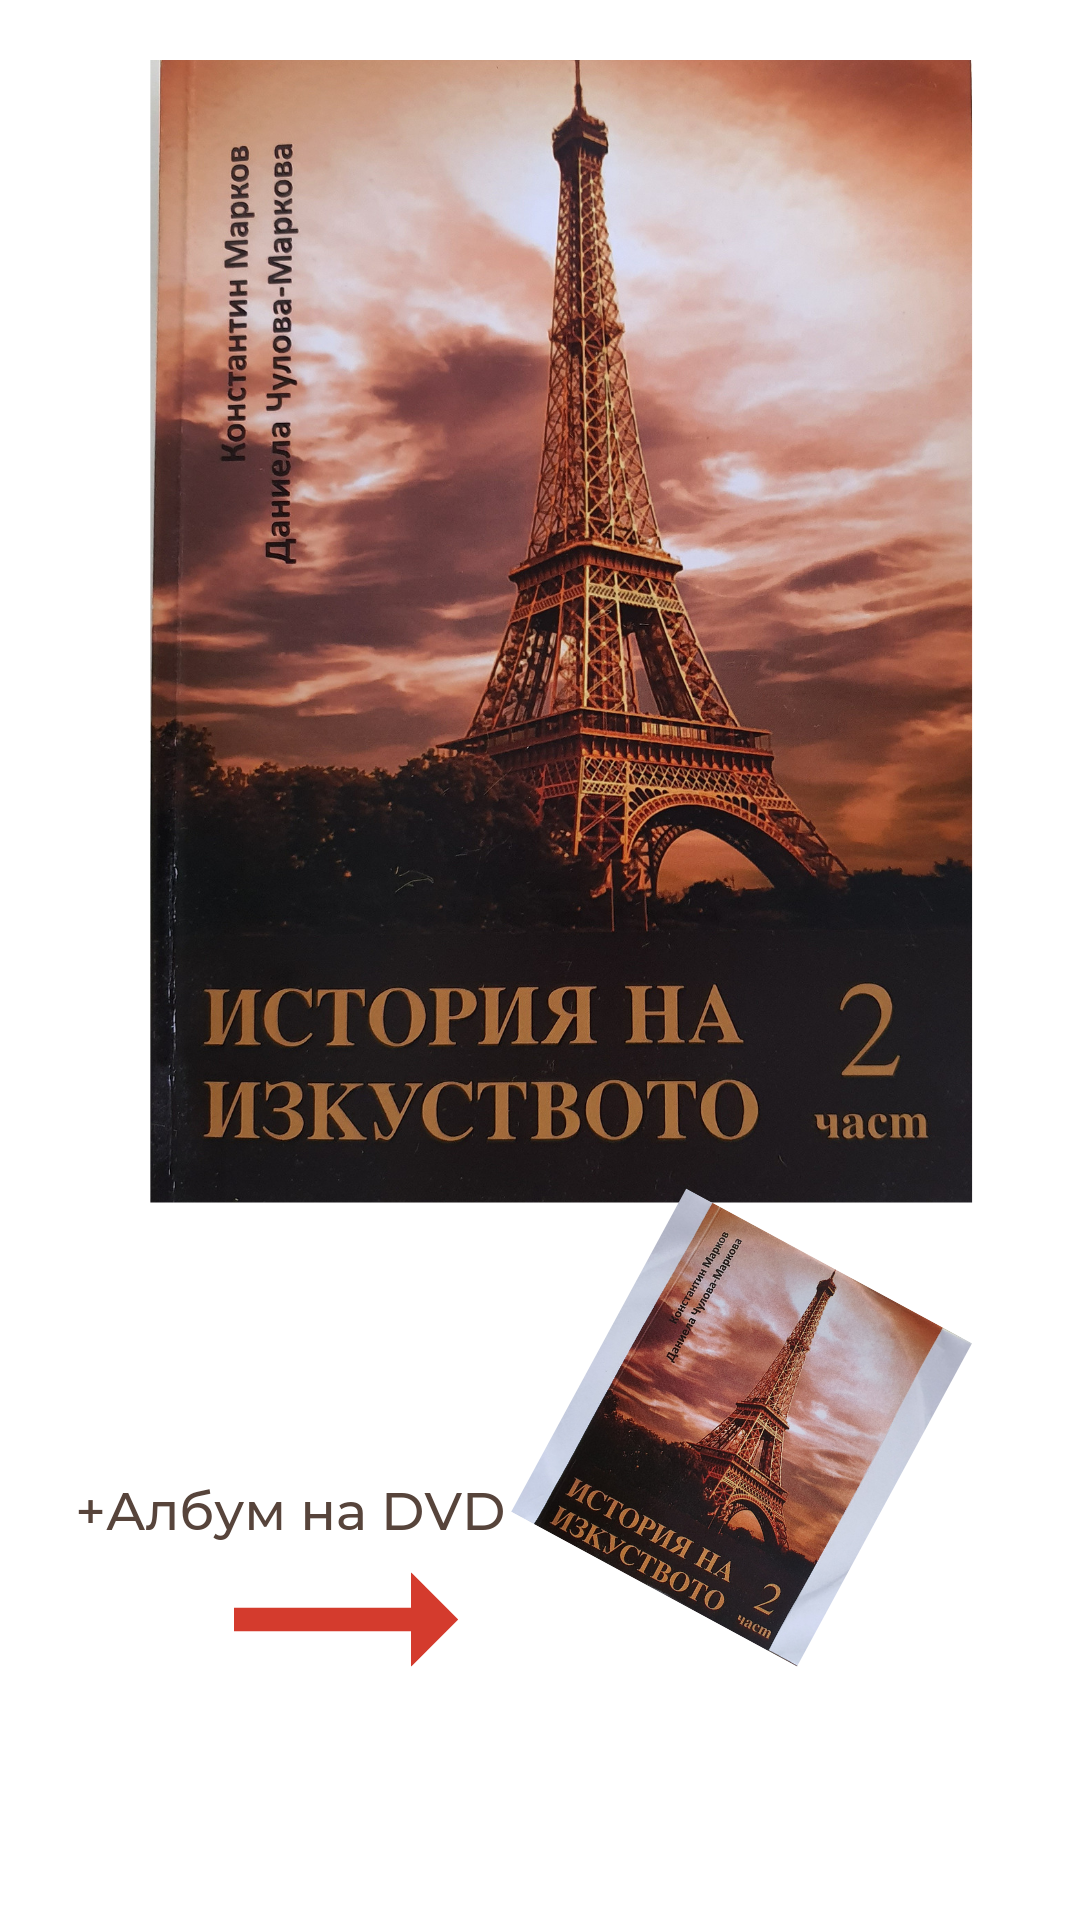 Книга по история на изкуството, втора част, придружена от албум на електронен носител. На корицата е изобразена Айфеловата кула.